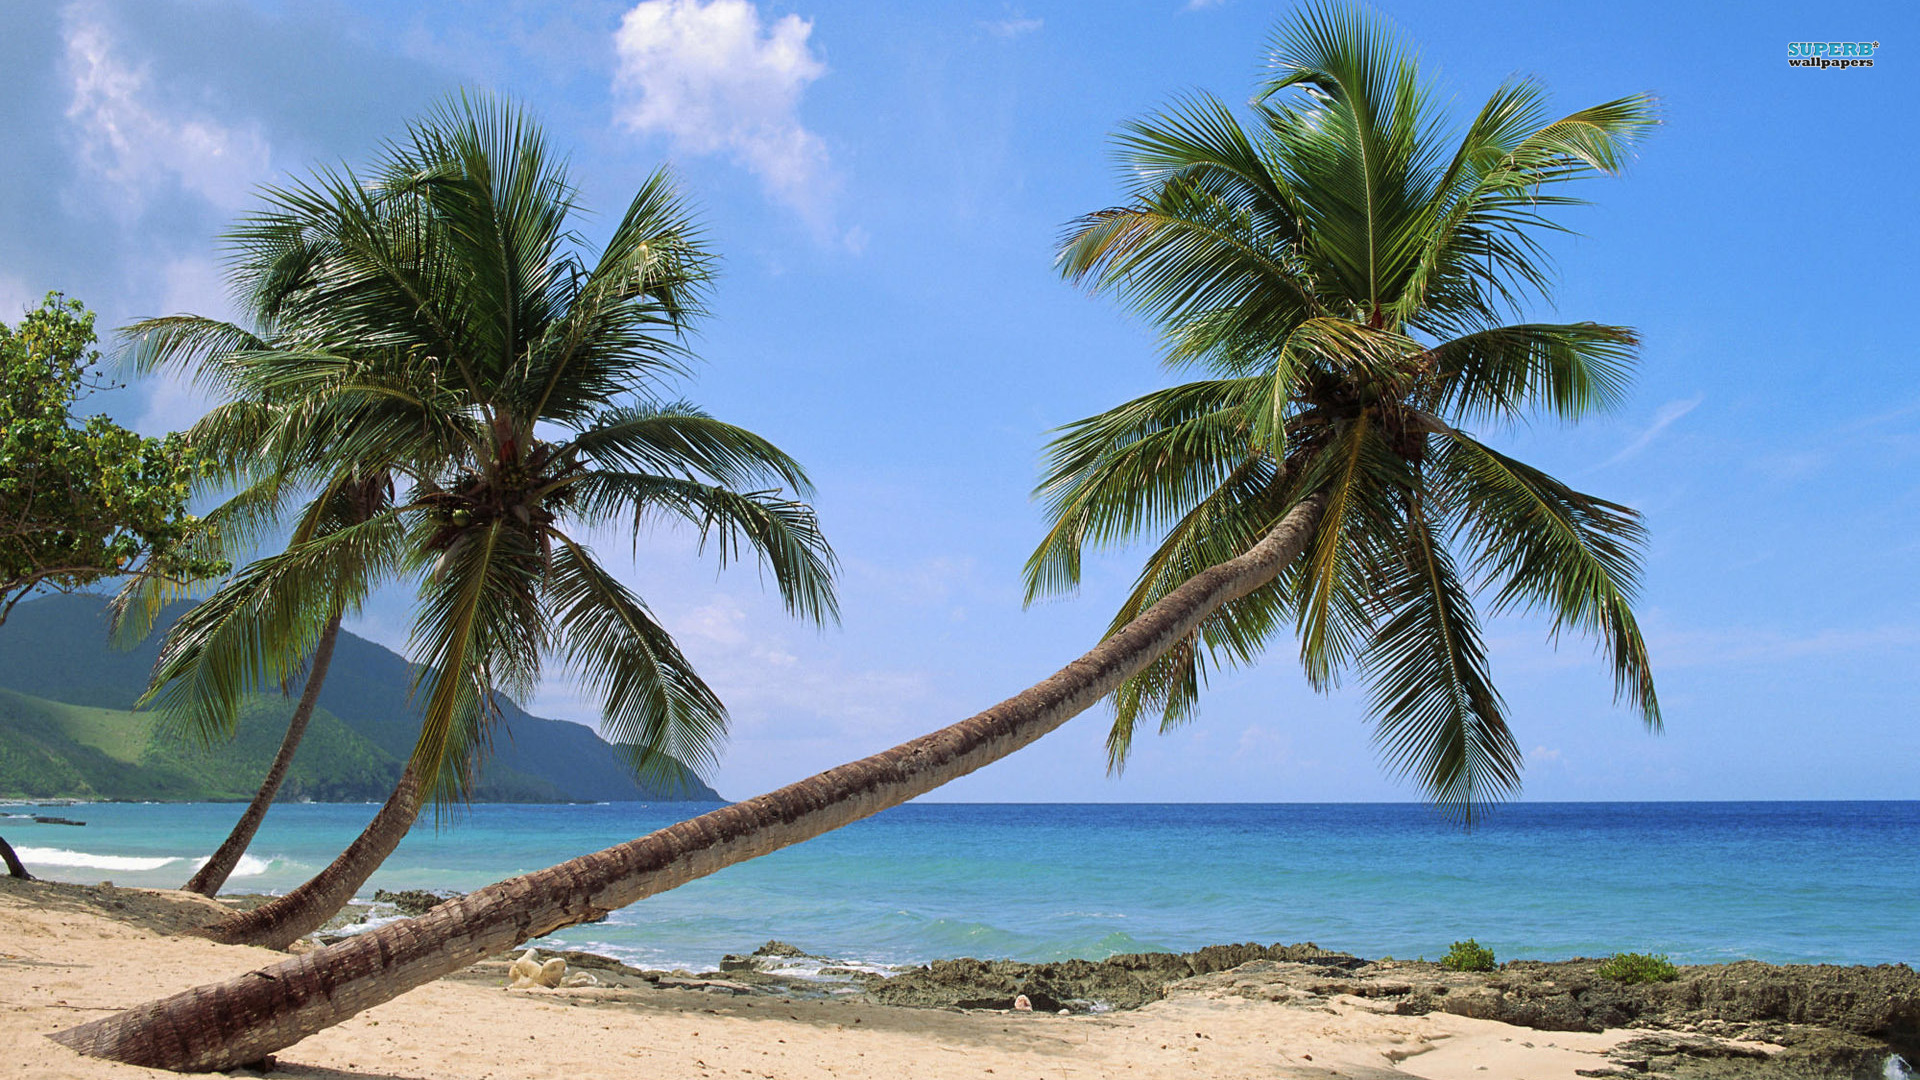 goa beach wallpaper,albero,palma,caraibico,pianta legnosa,cielo